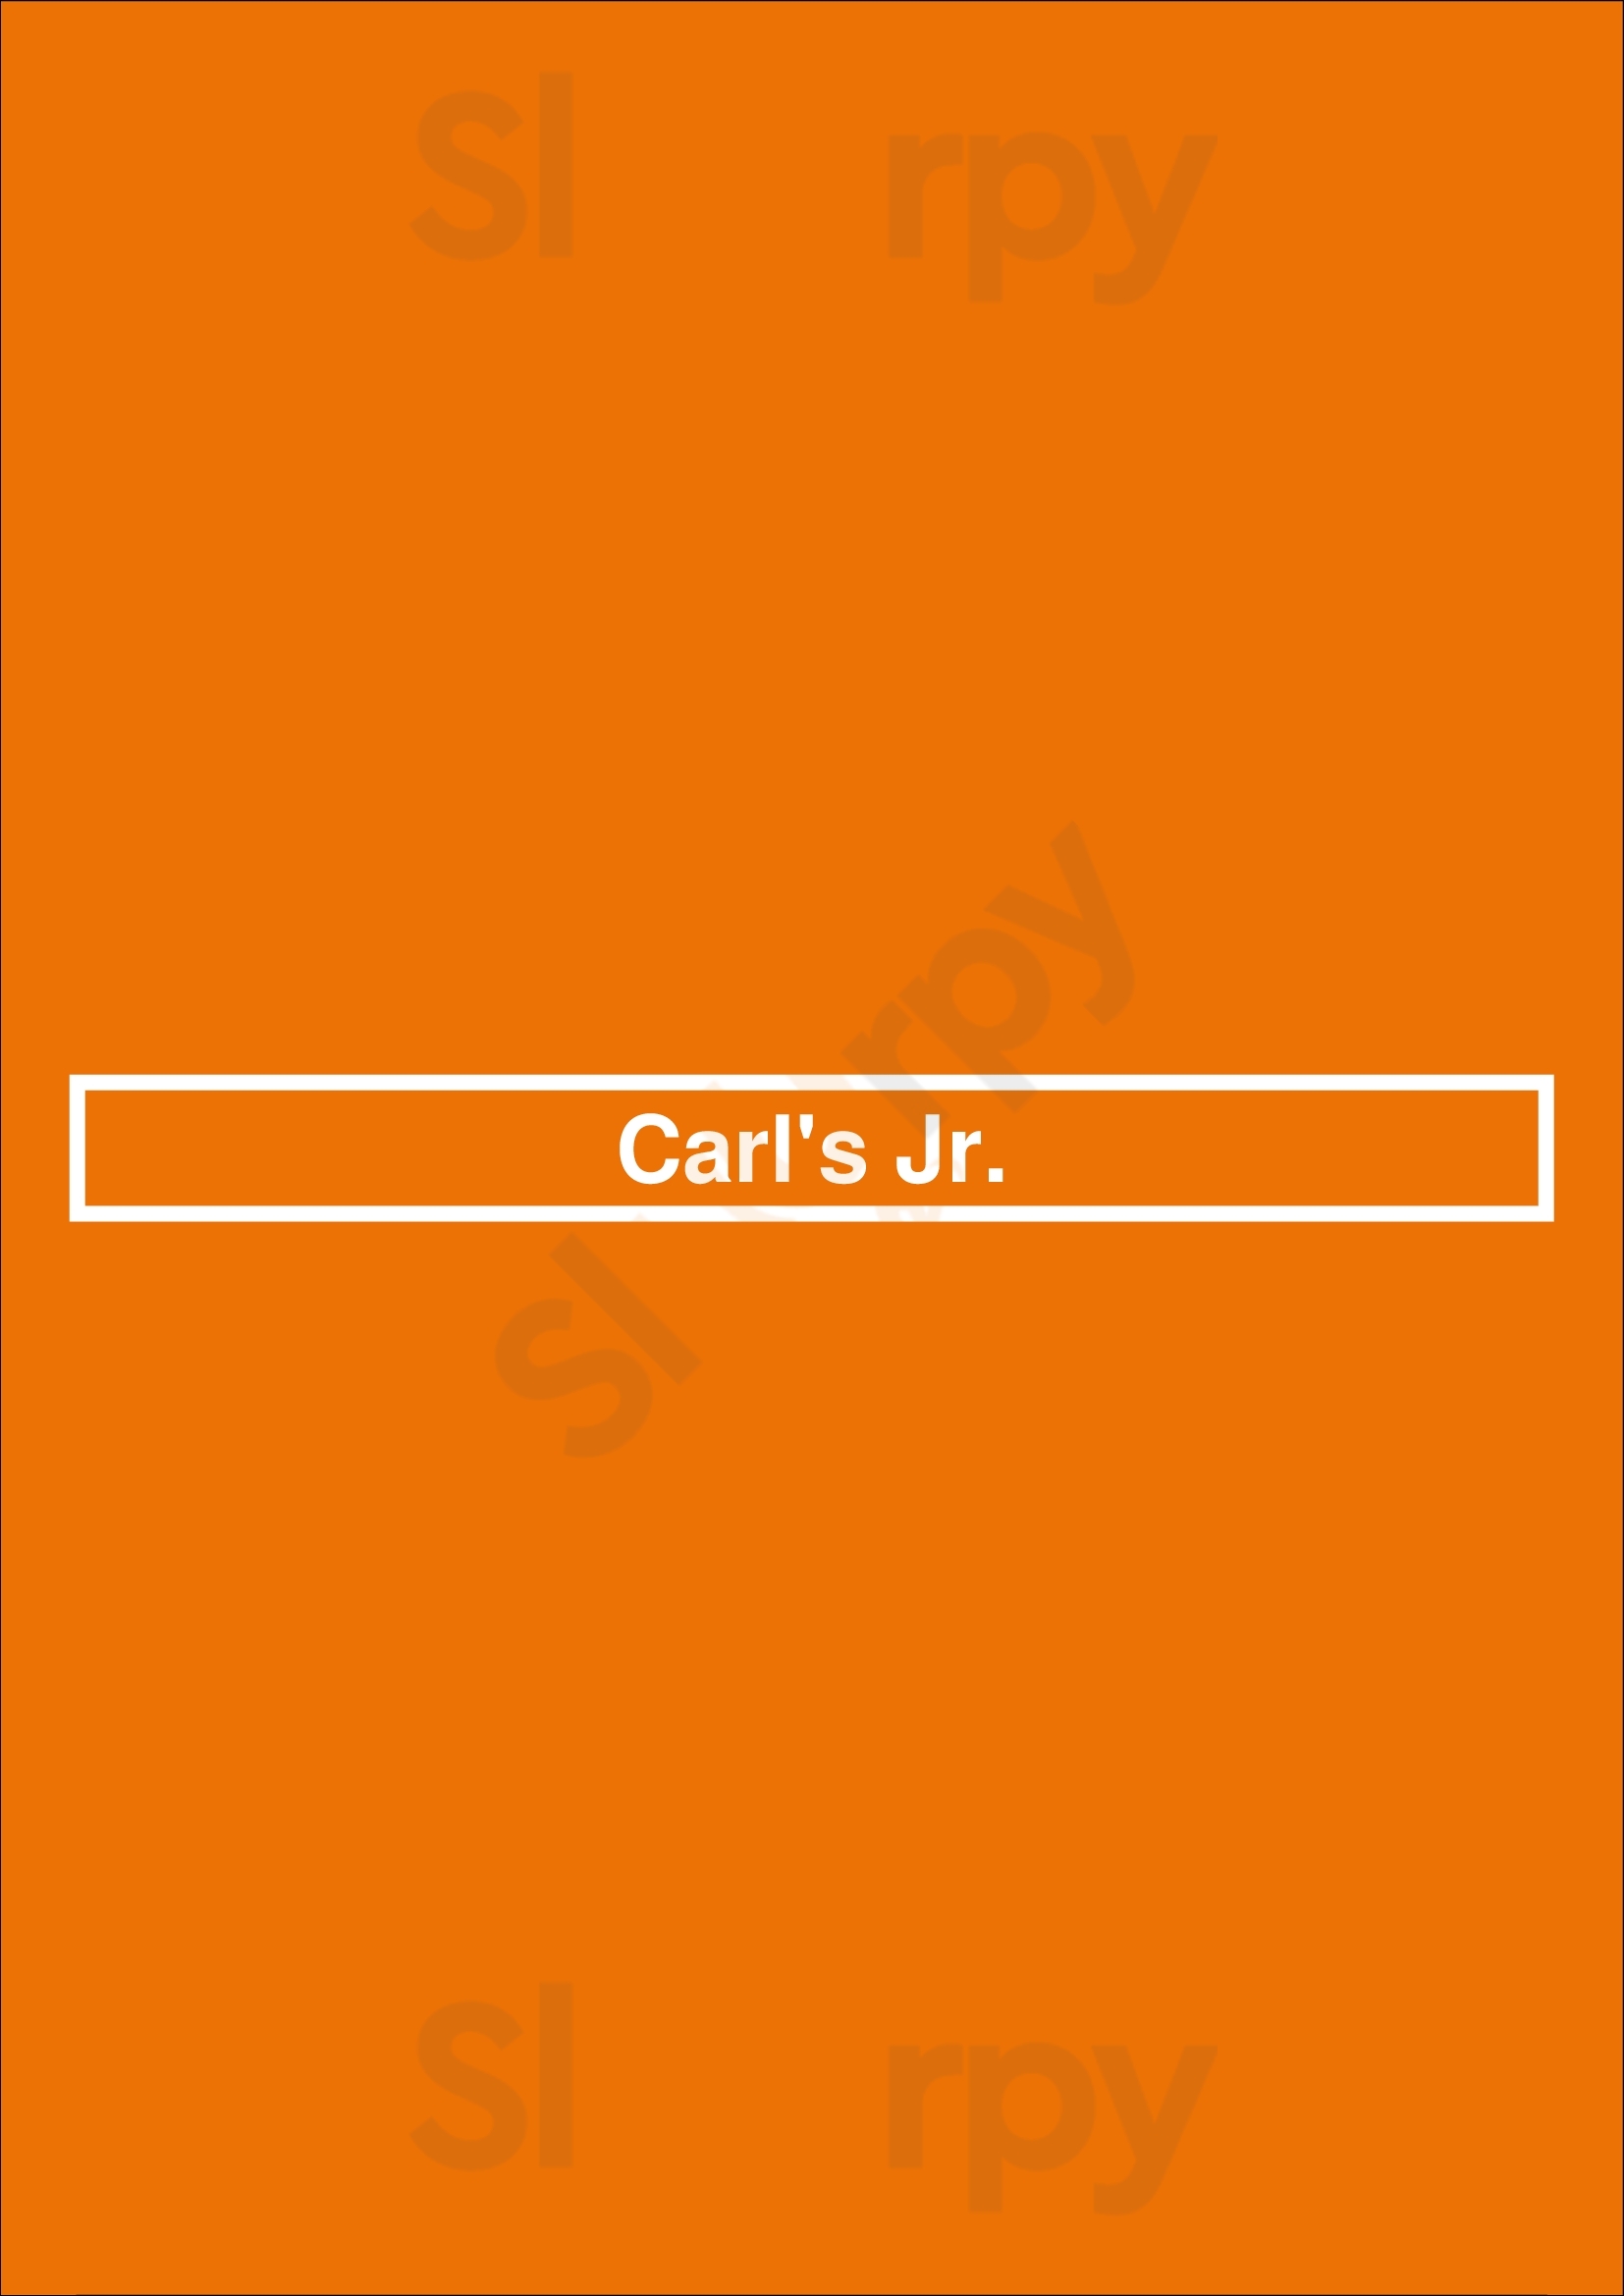 Carl's Jr. Newport Beach Menu - 1